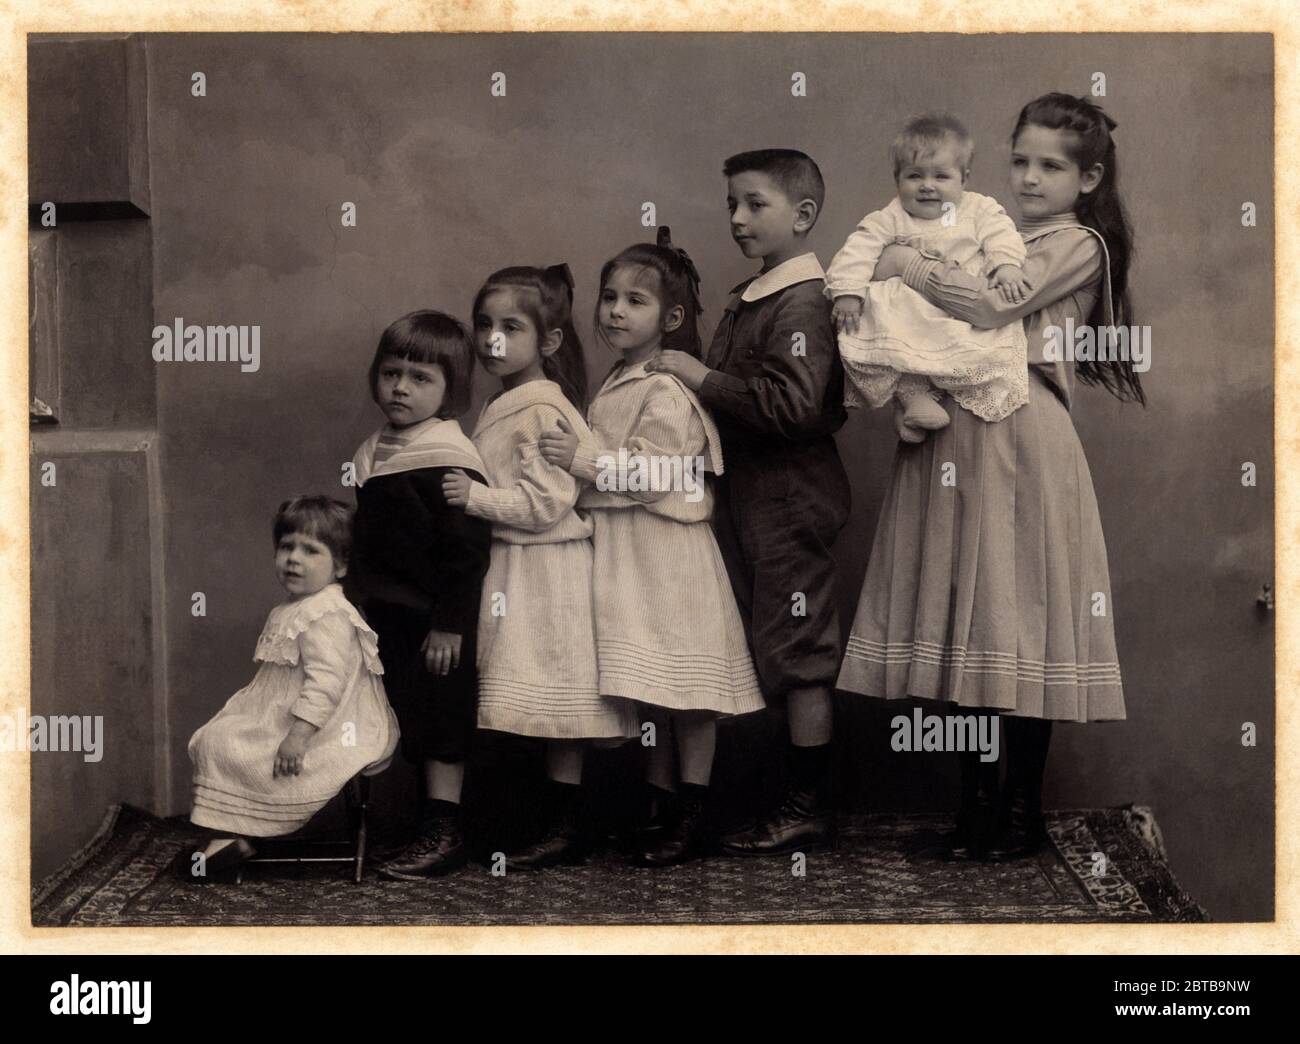 1910 c., GENOVA, ITALY : Seven children brothers and sisters . Photo by unknown photographer . - FAMILY - FAMIGLIA - SETTE FRATELLI - FRATELLO - BROTHER - SORELLE - SORELLA - esplosione demografica - incremento demografico - ITALIA - FOTO STORICHE - HISTORY PHOTOS - BAMBINO - BAMBINI - CHILDREN - CHILD - BABY - CHILDHOOD - INFANZIA - BABY  - INFANZIA - ANNI DIECI - '10 - 10's ----  Archivio GBB Stock Photo